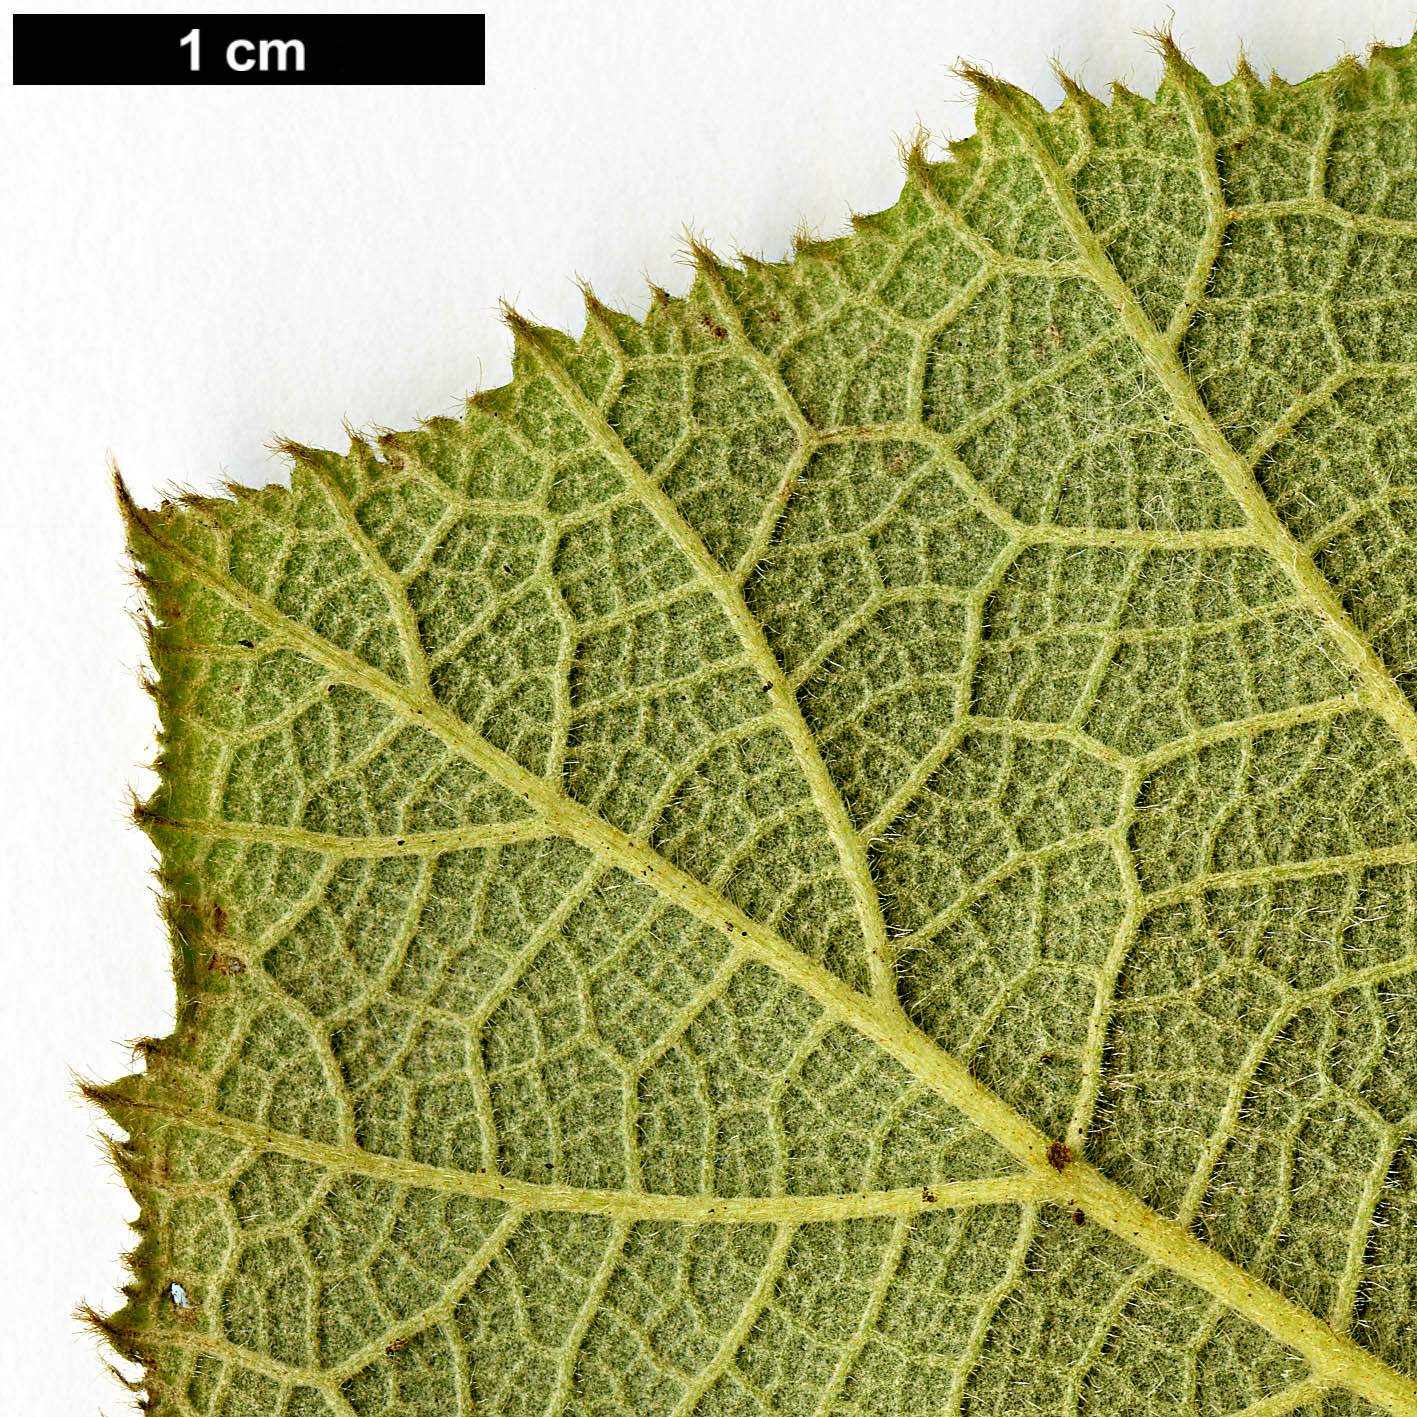 High resolution image: Family: Rosaceae - Genus: Rubus - Taxon: irenaeus